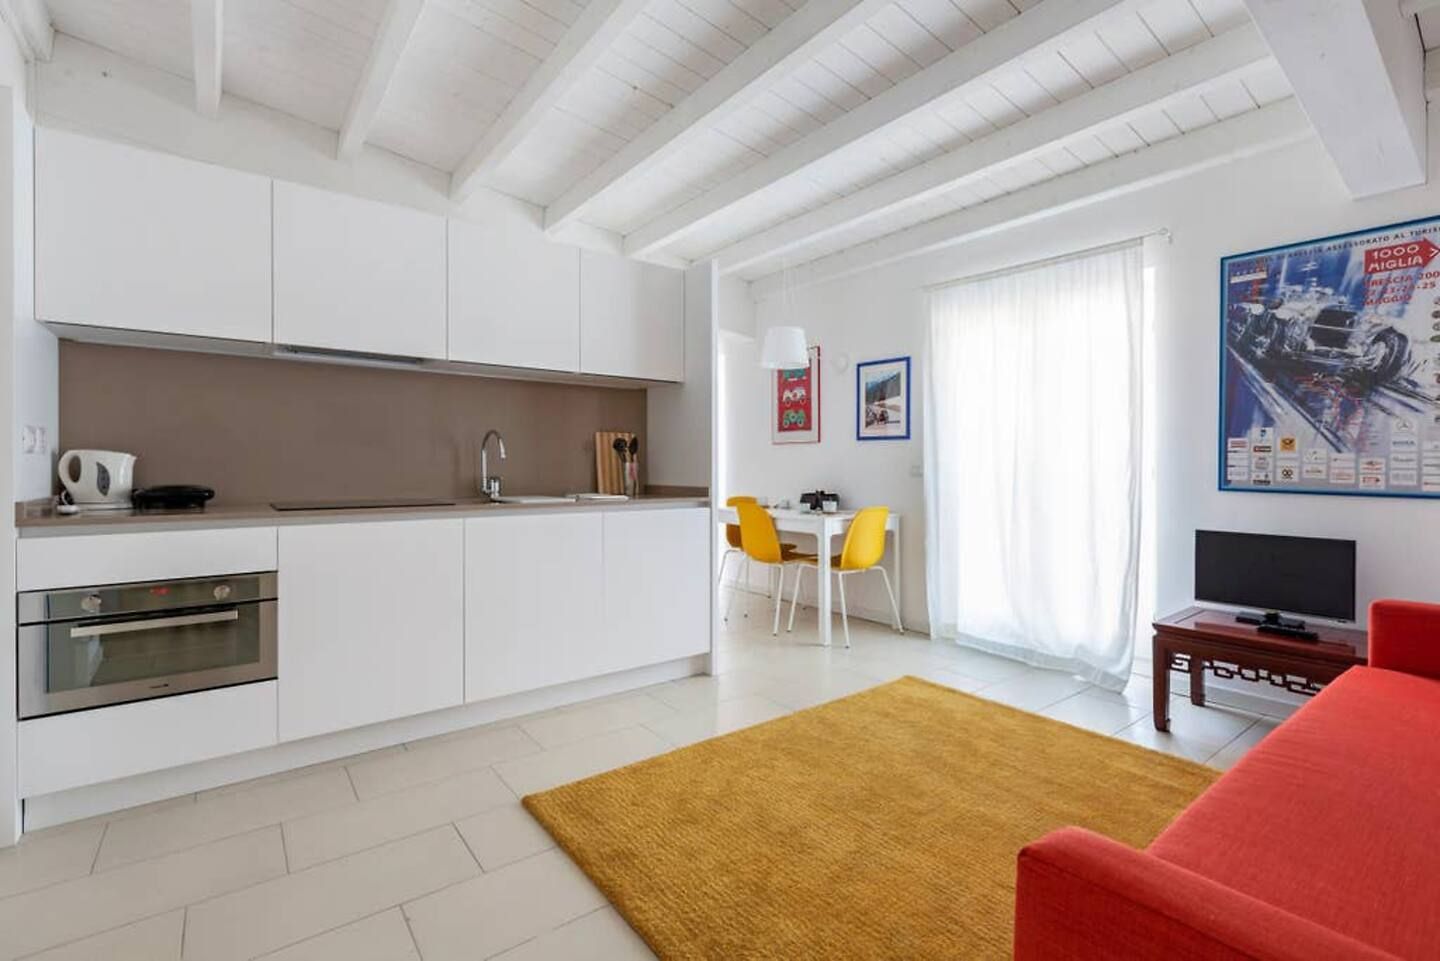 FF - Piccolo appartamento 50 m2 - B&B, Filippo Zuliani Architetto Filippo Zuliani Architetto Living room Ceramic